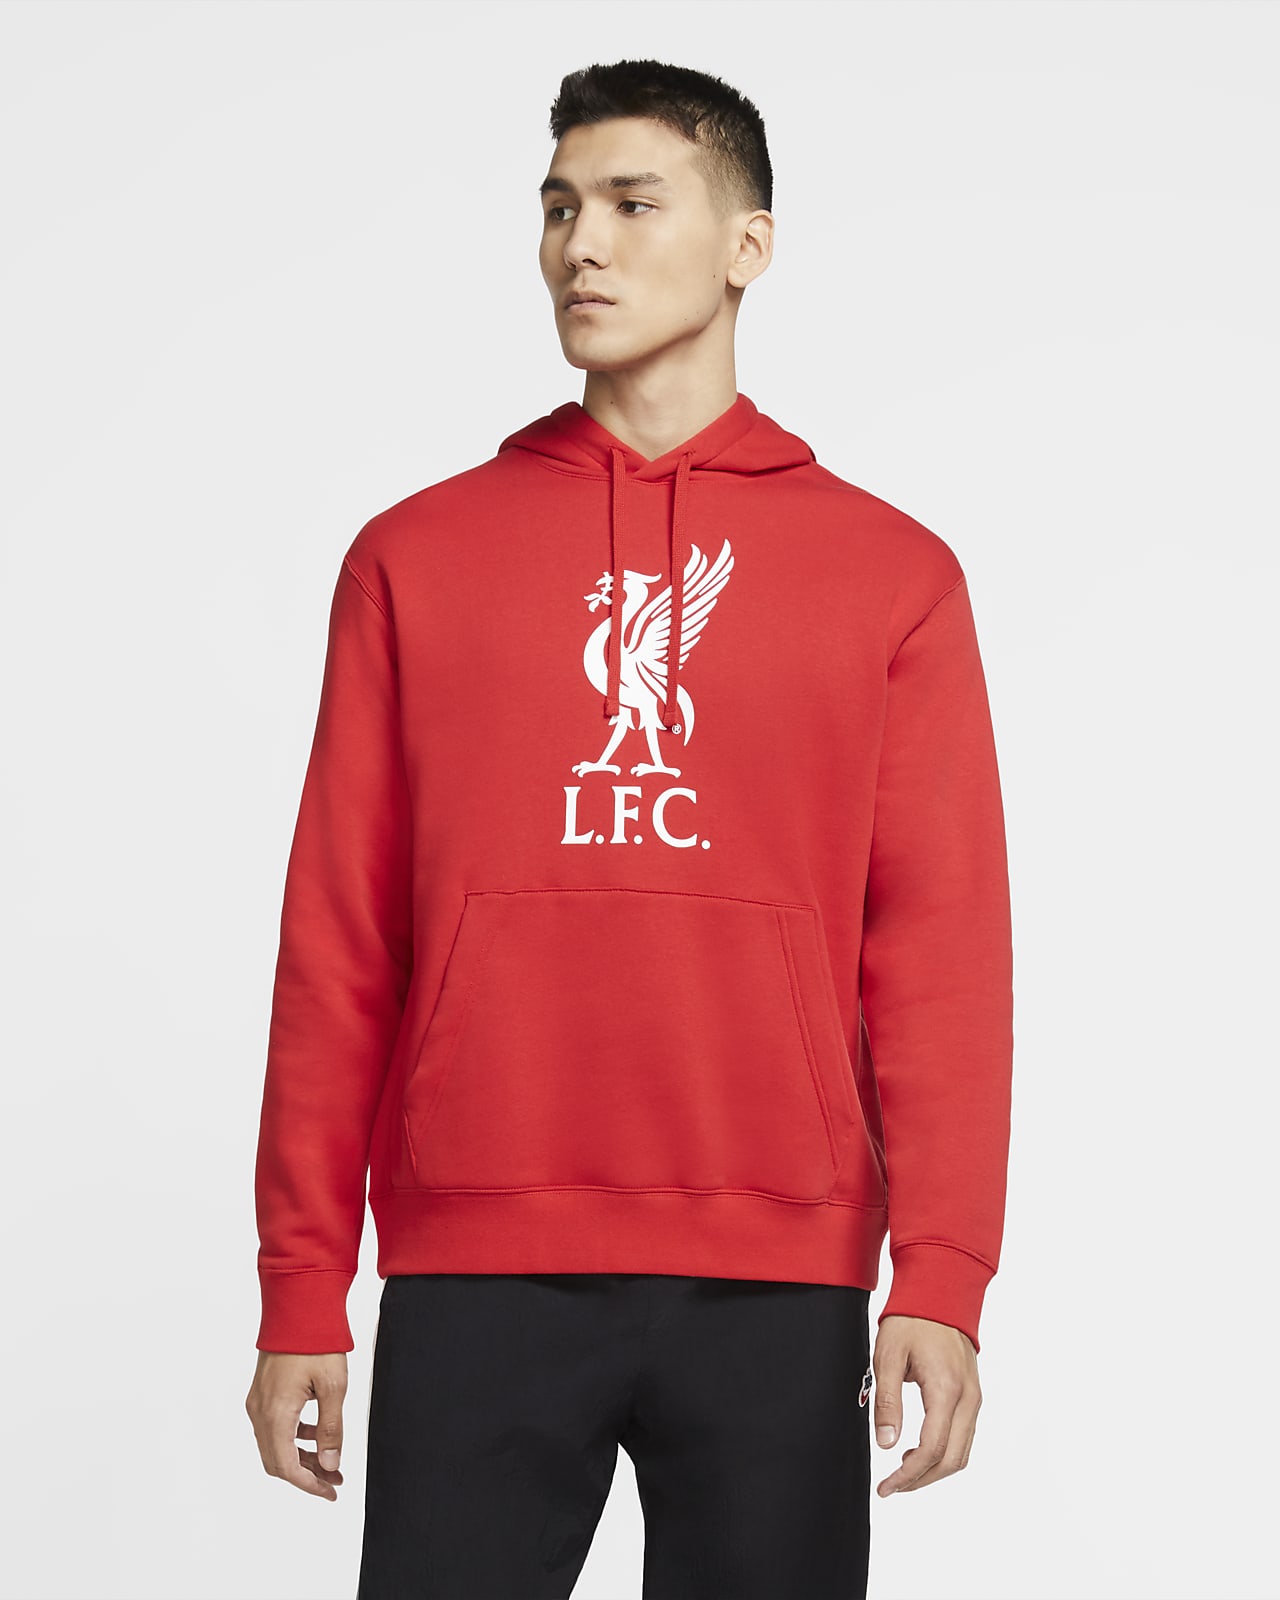 Sudadera con capucha sin cierre para Hombre Liverpool FC Club. Nike.com